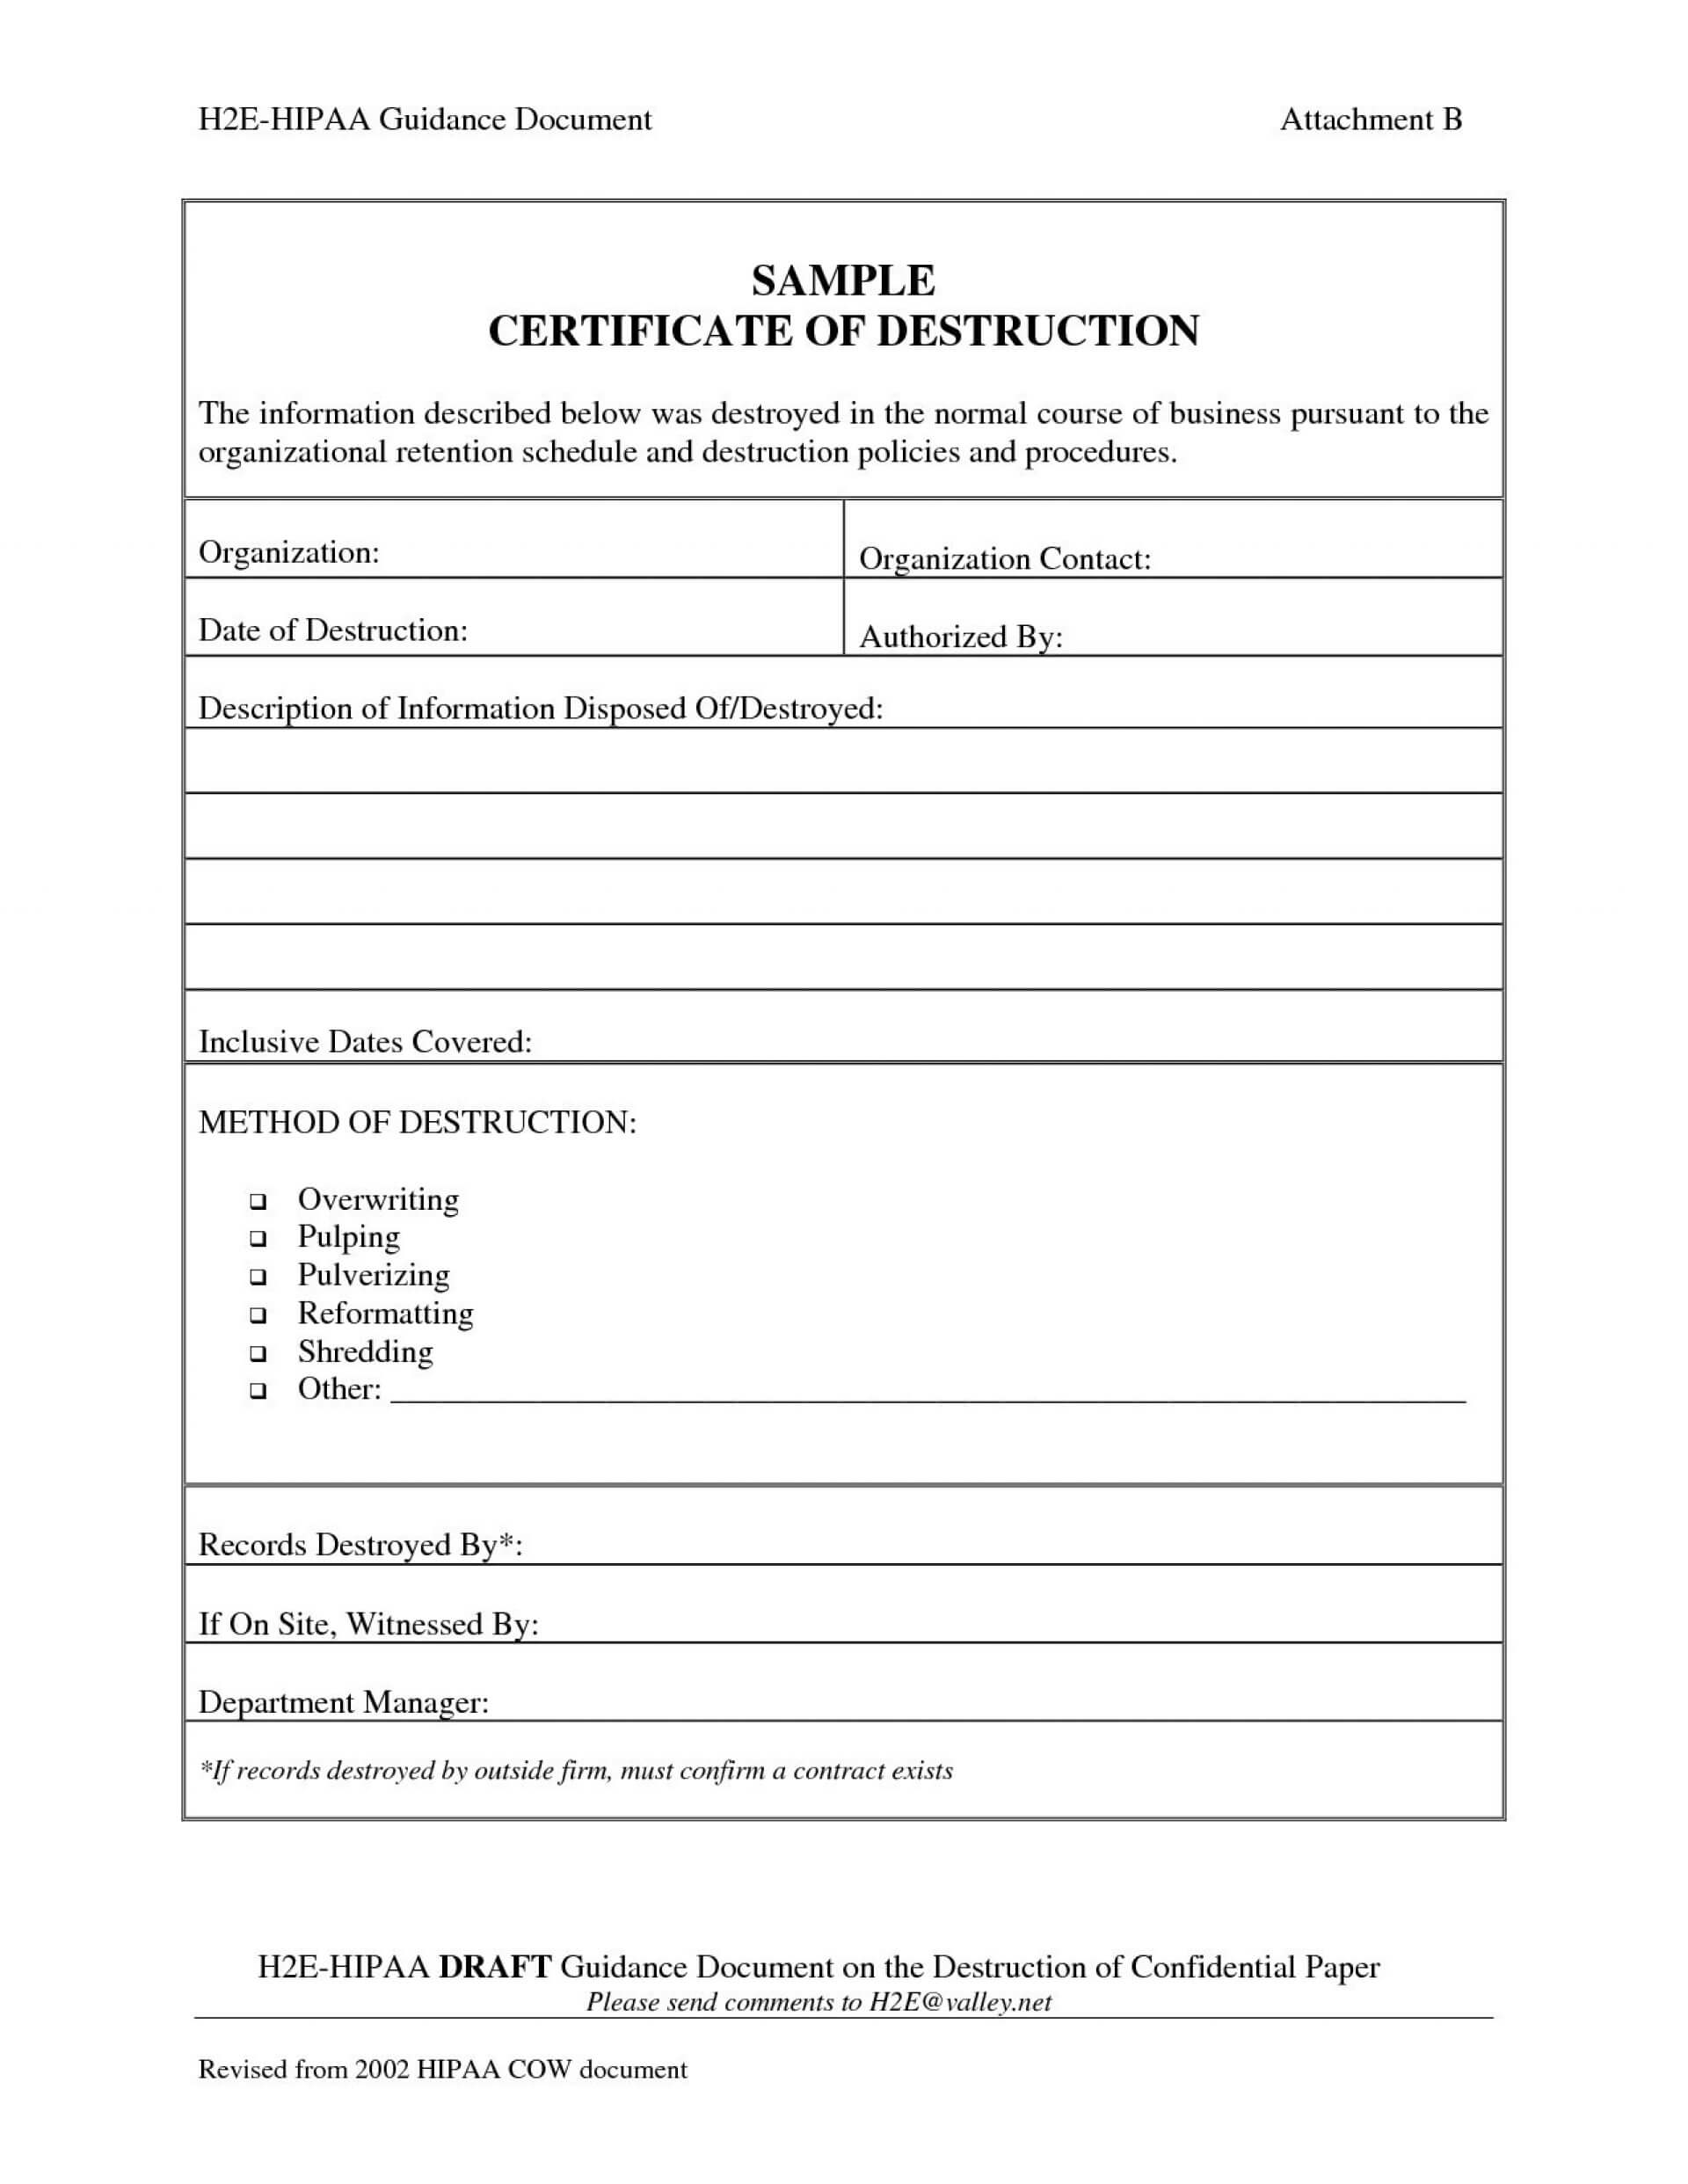 005 Certificate Of Destruction Template Ideas Exceptional Pertaining To Certificate Of Destruction Template